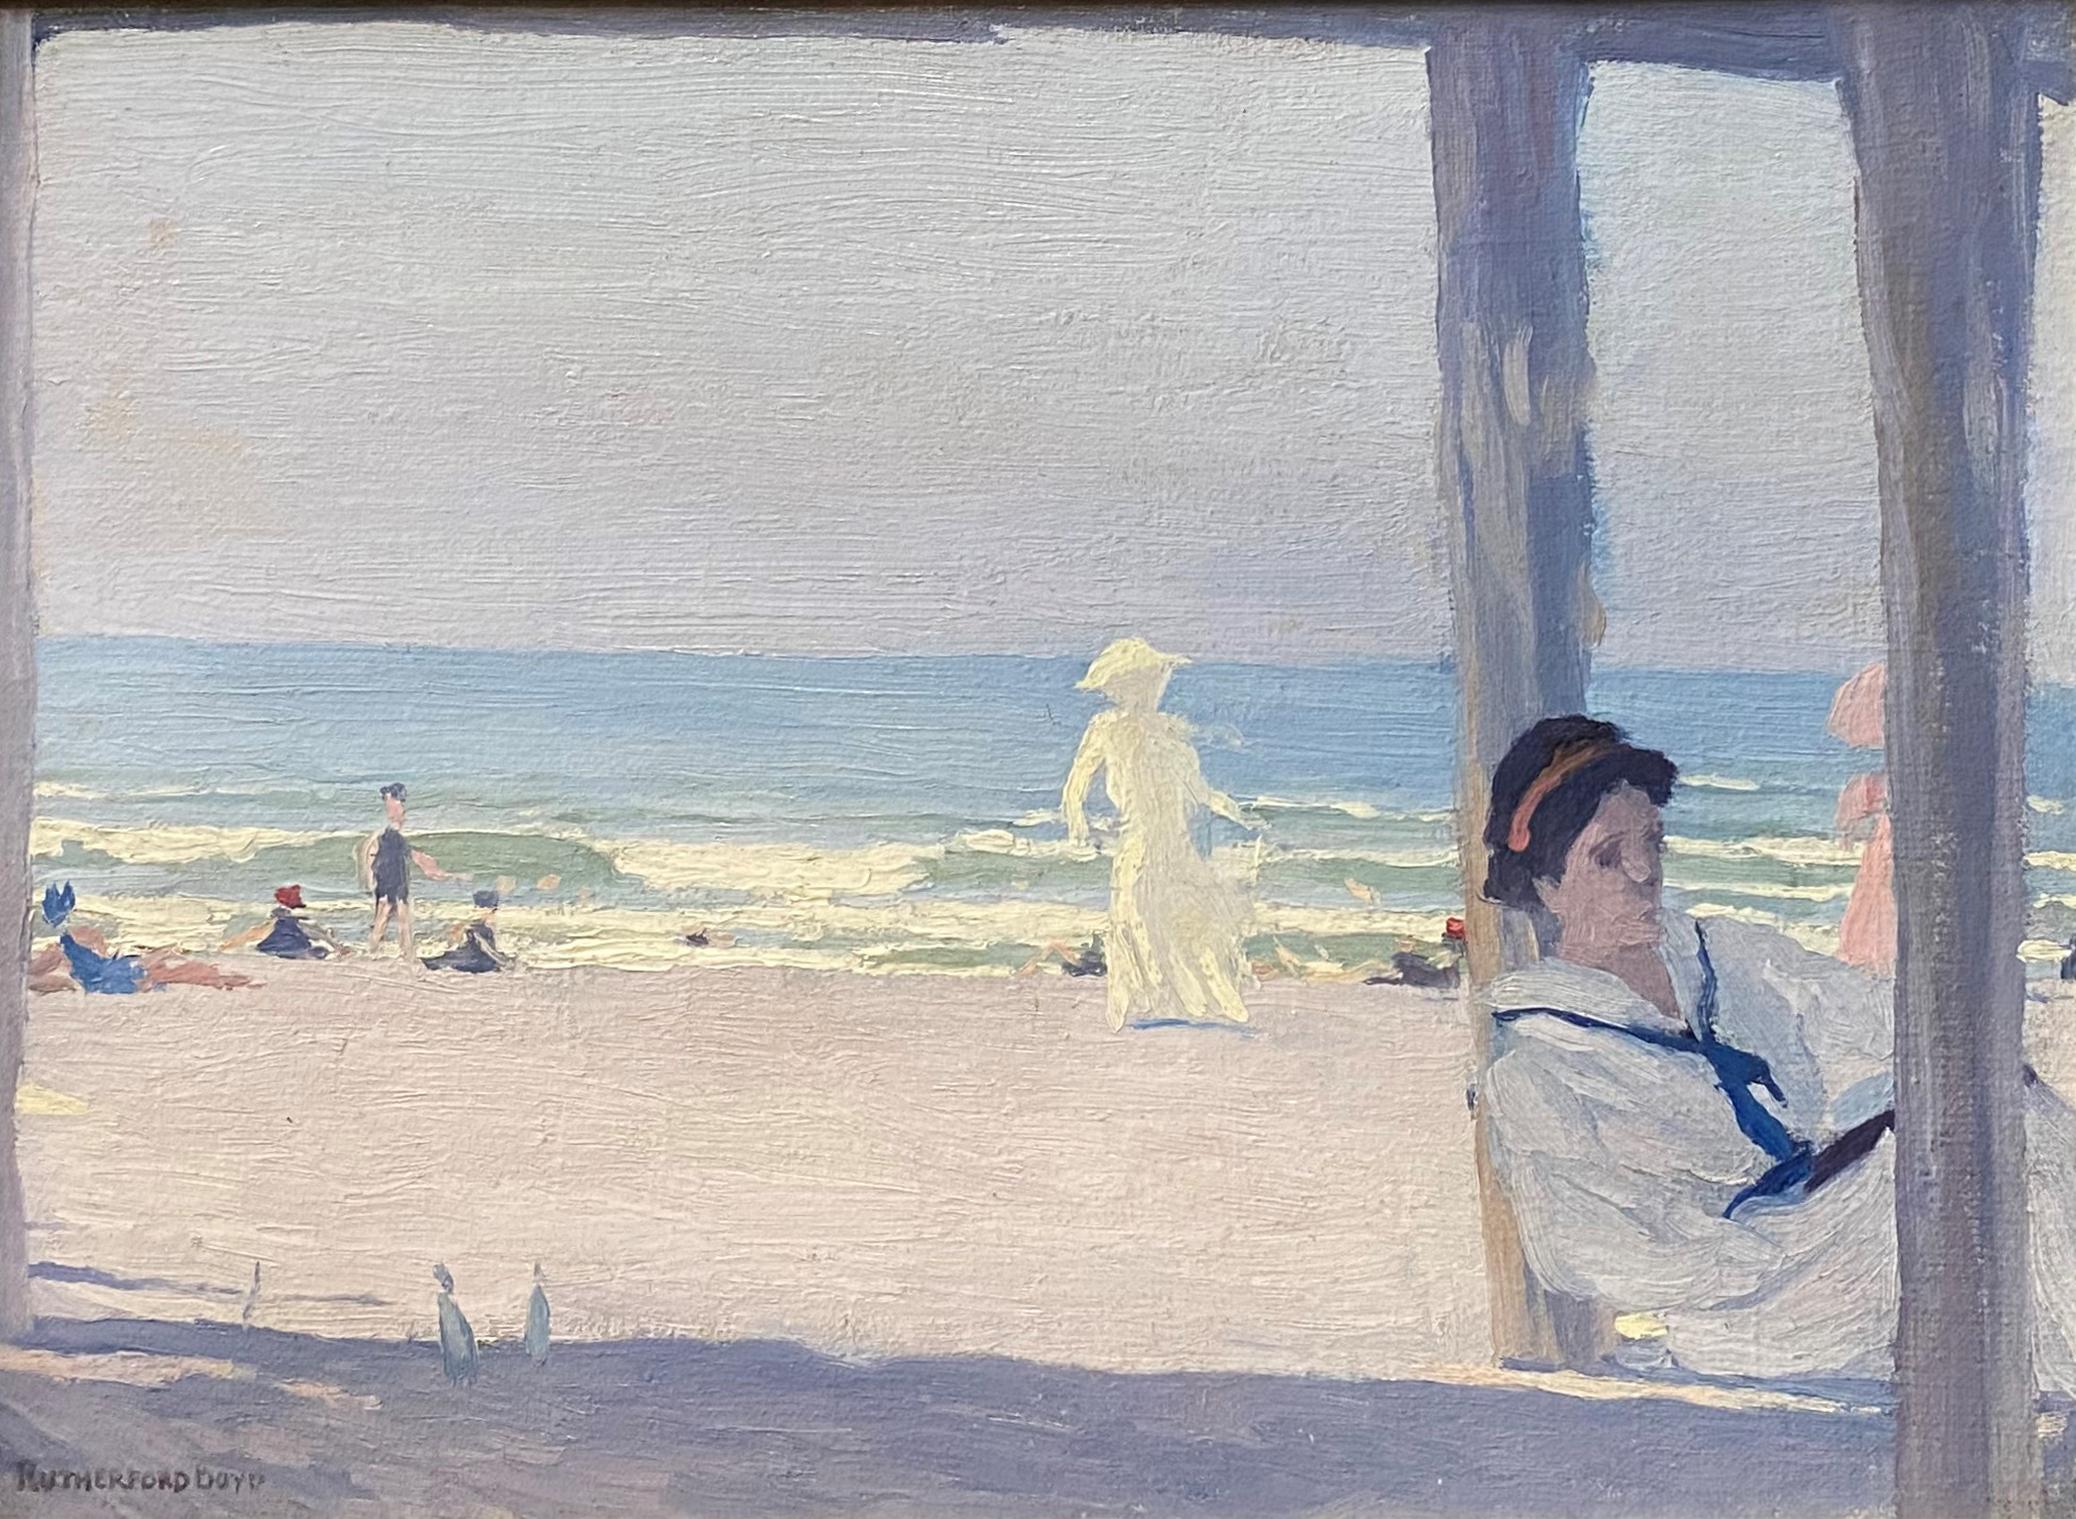 Sitzende Frau in Weiß – Painting von John Rutherford Boyd